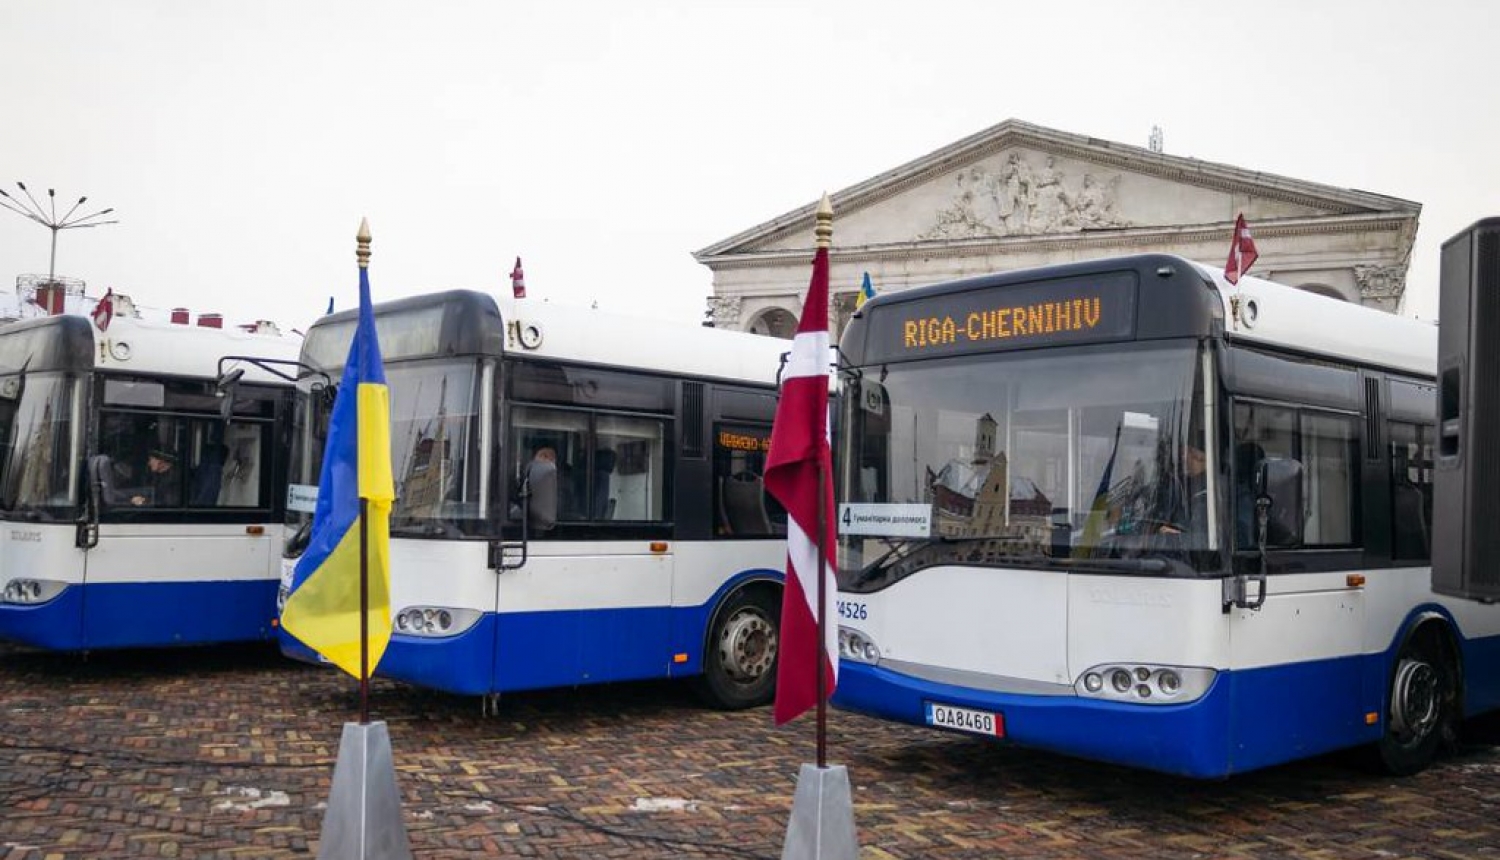 Rīgas satiksmes autobusi Čirņihivā